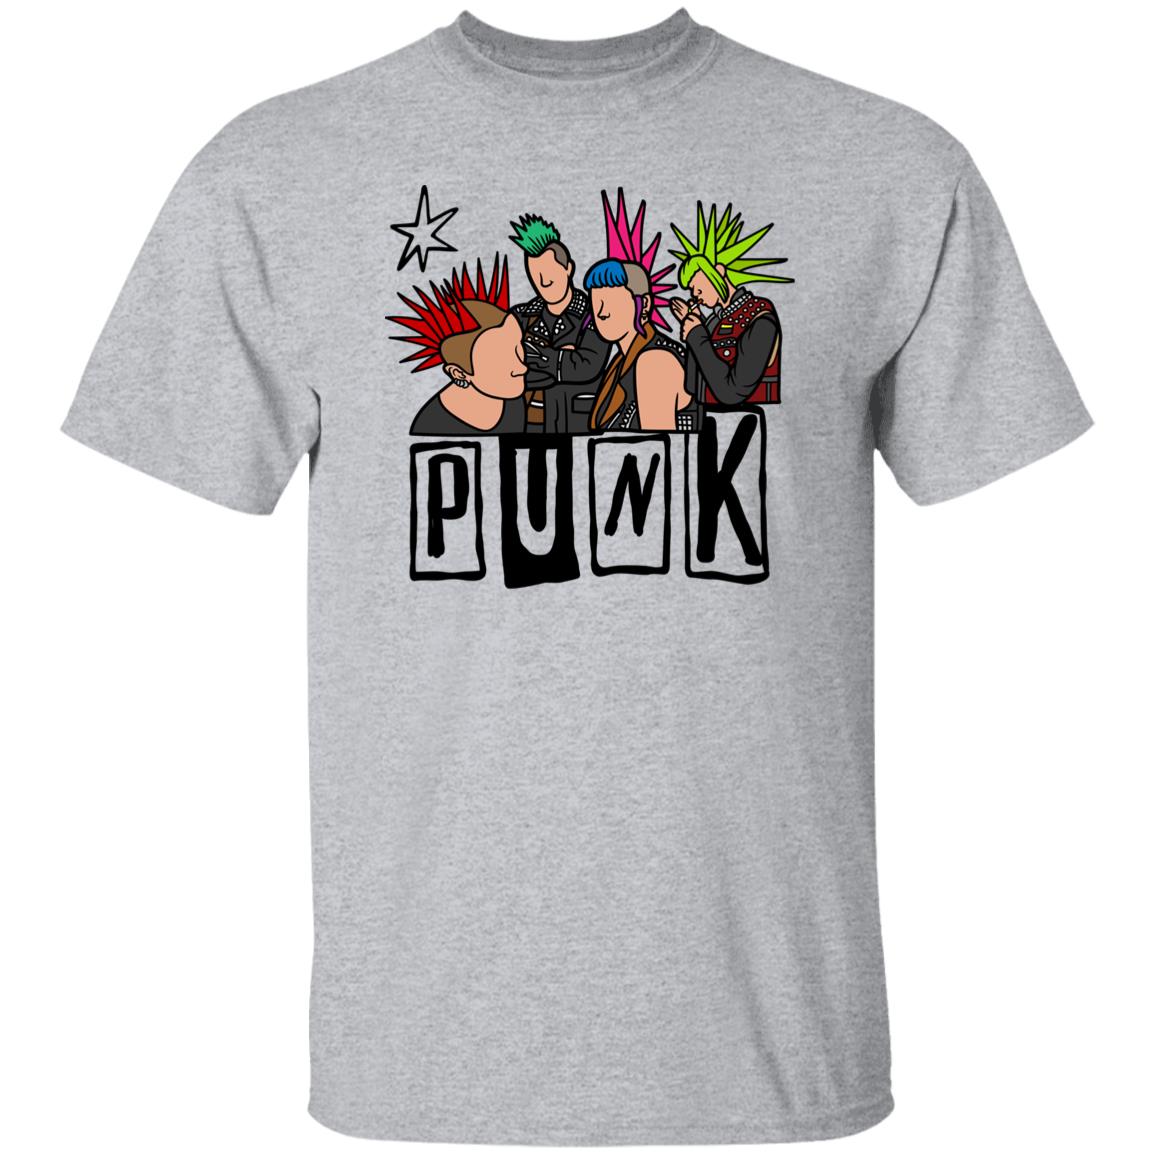 Punk Rock Graphic Tshirt--Unique Shirt for Rebels